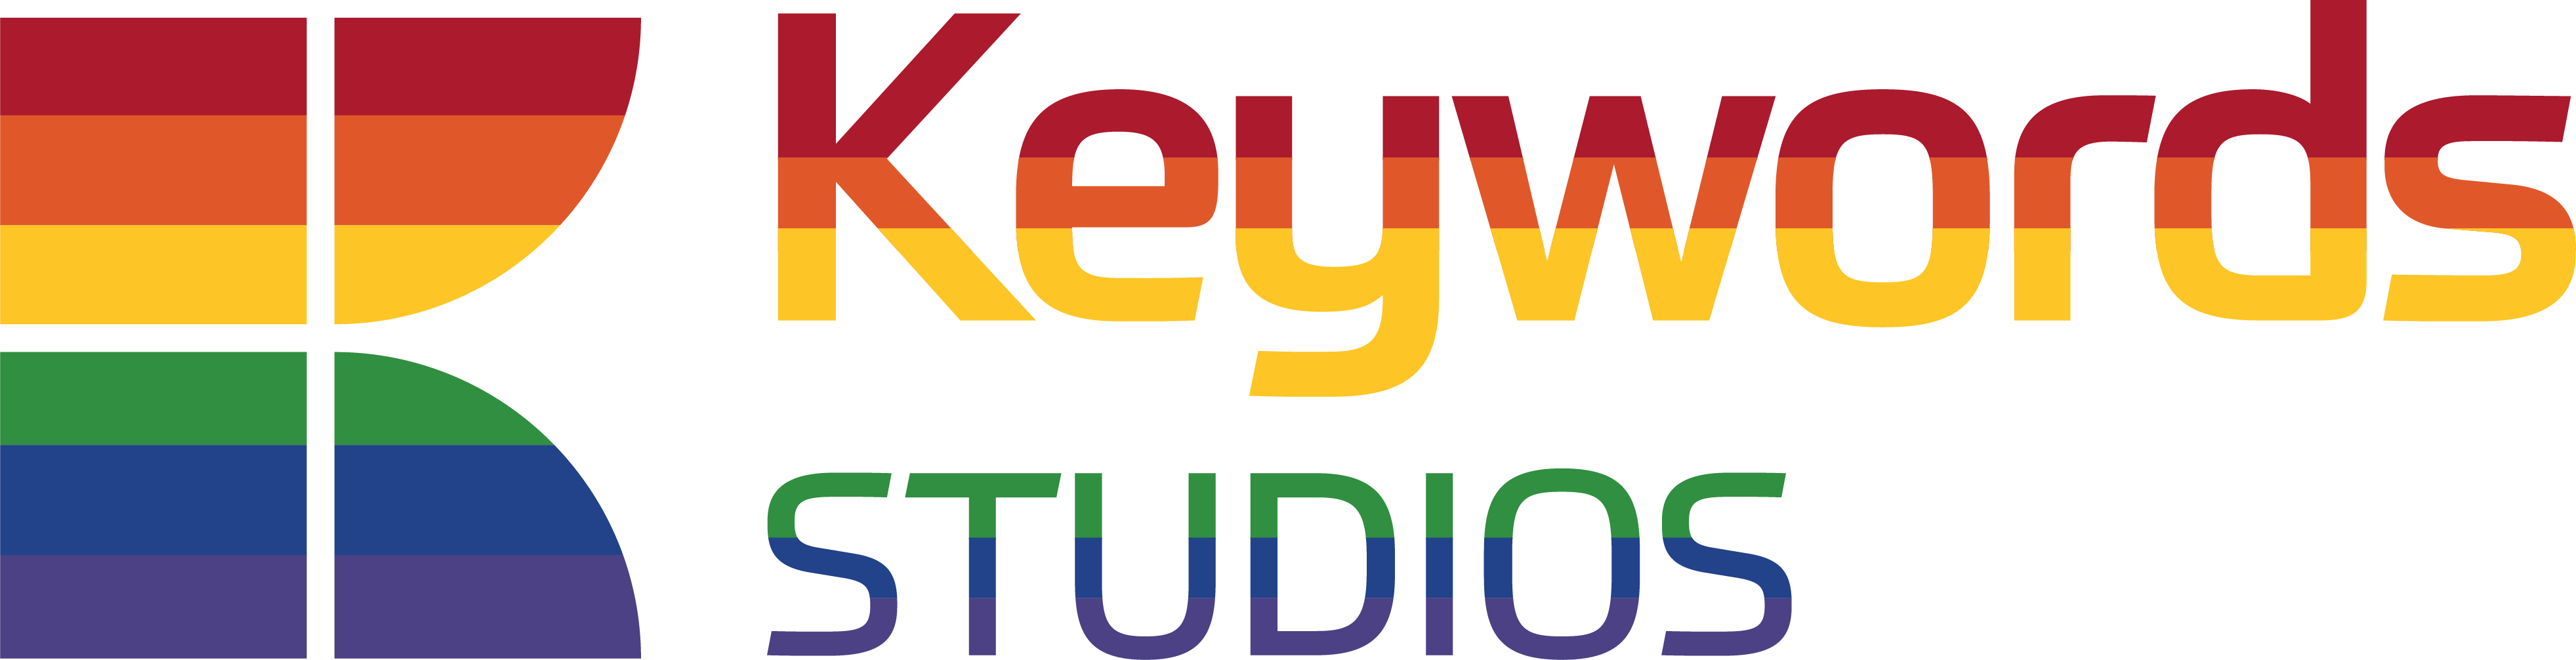 Art Services Keywords Studios